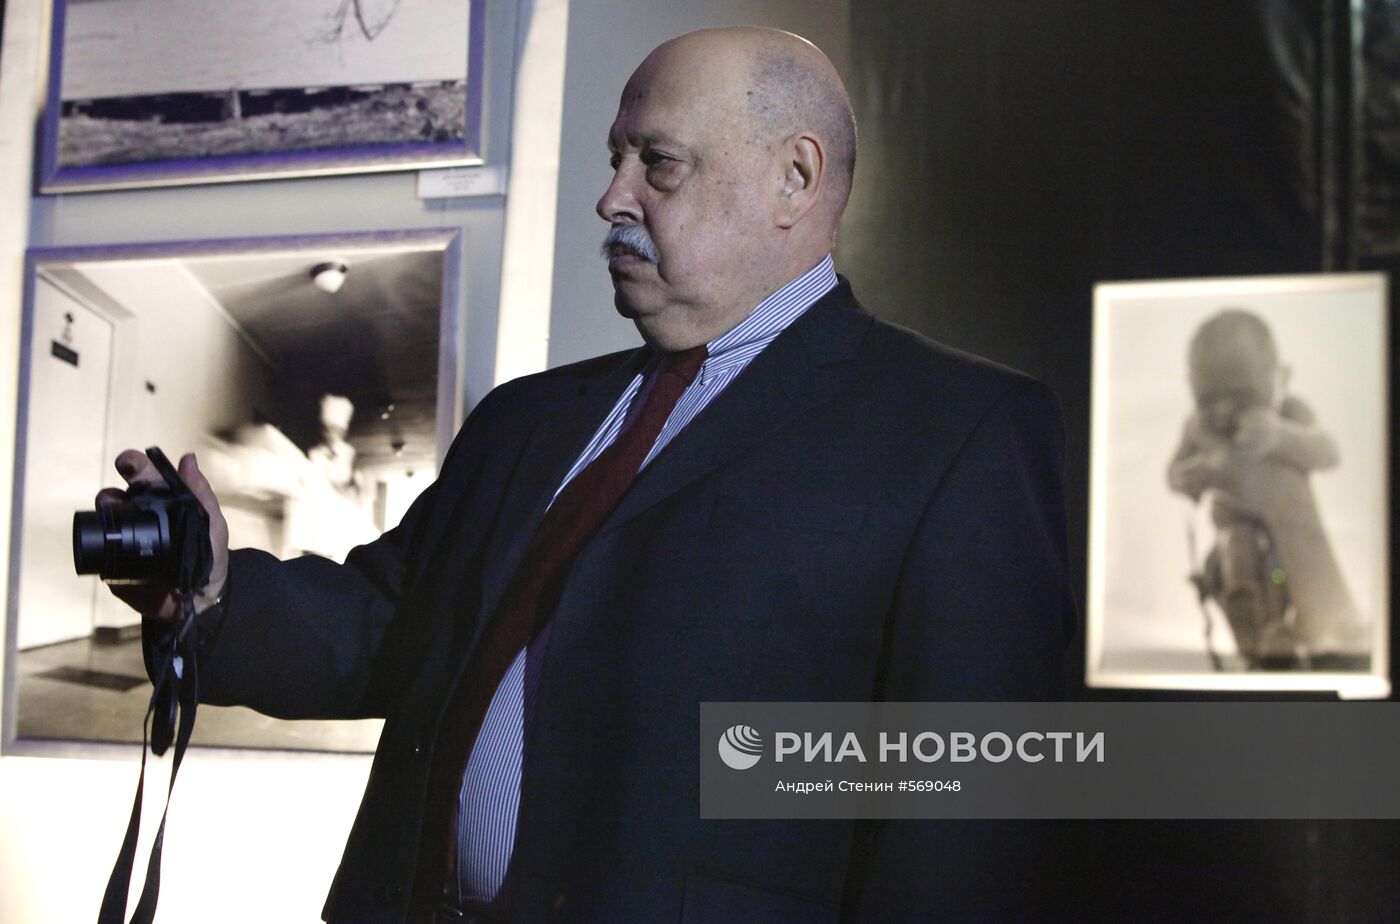 Выставка Бориса Кауфмана "Лабиринт" открылась в Москве